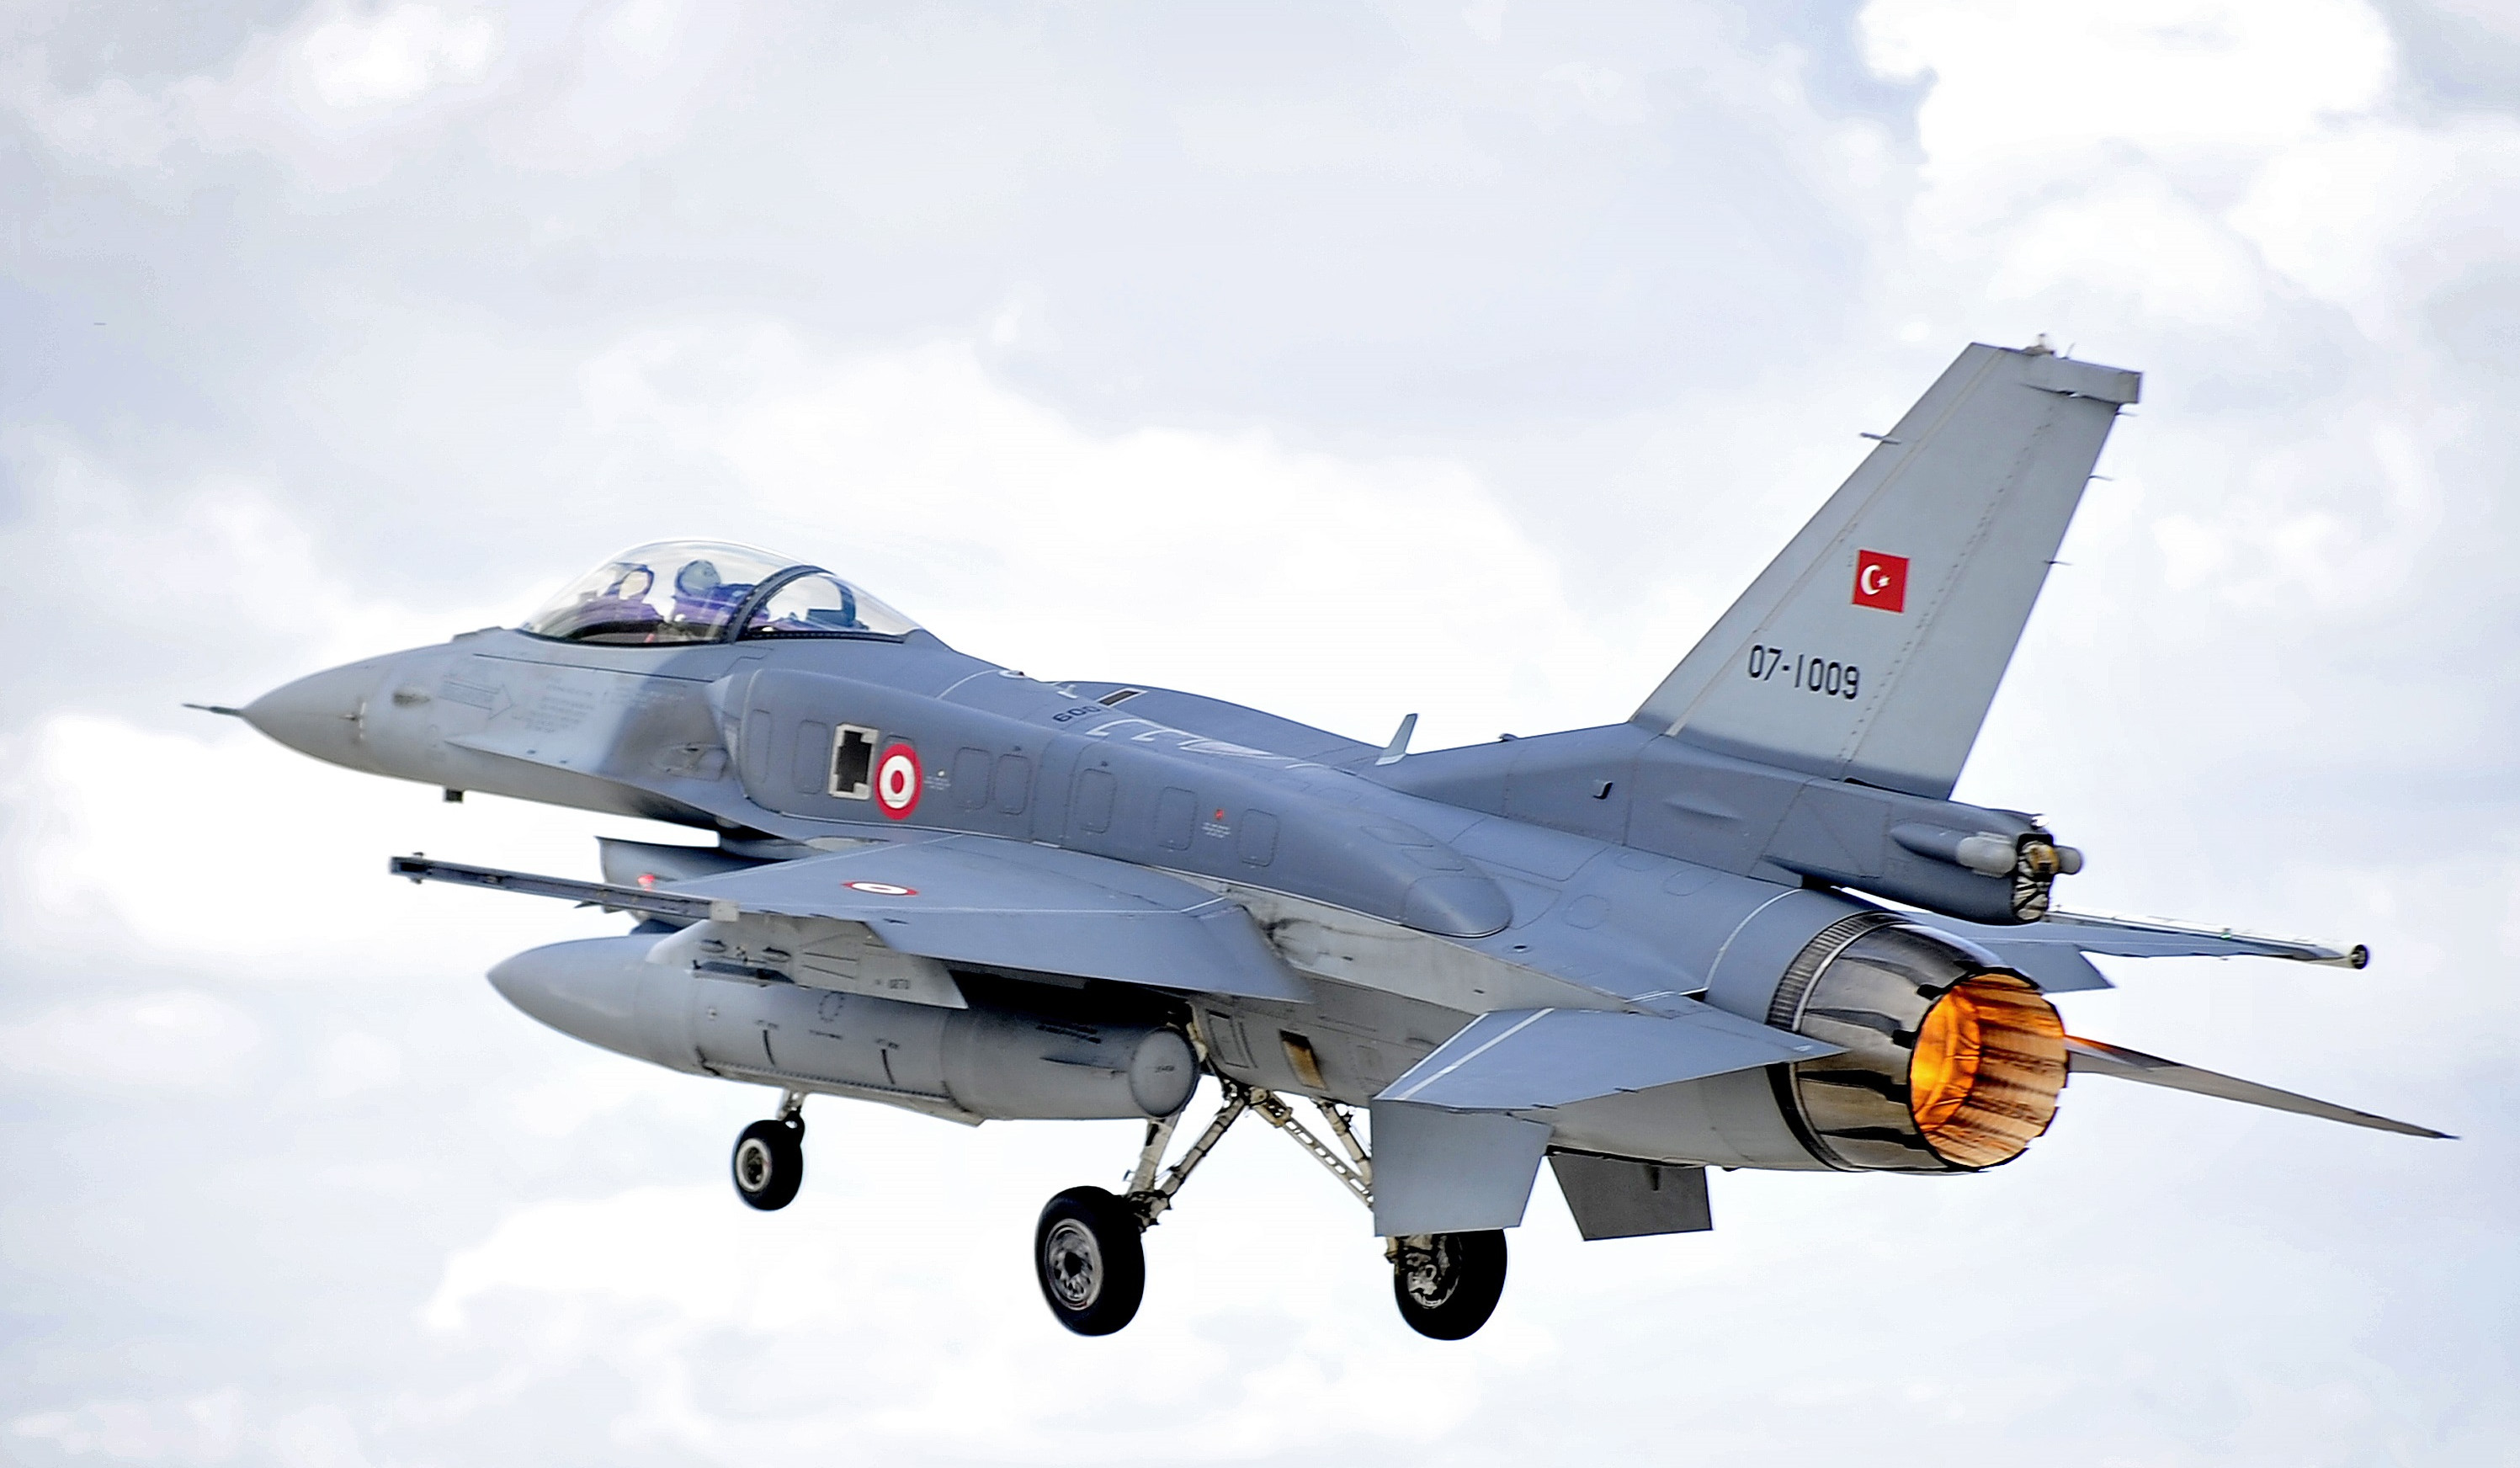 Թուրքիան իր F-16 կործանիչների արդիականացման համար աջակցություն է ստացել Բայդենի վարչակազմի կողմից